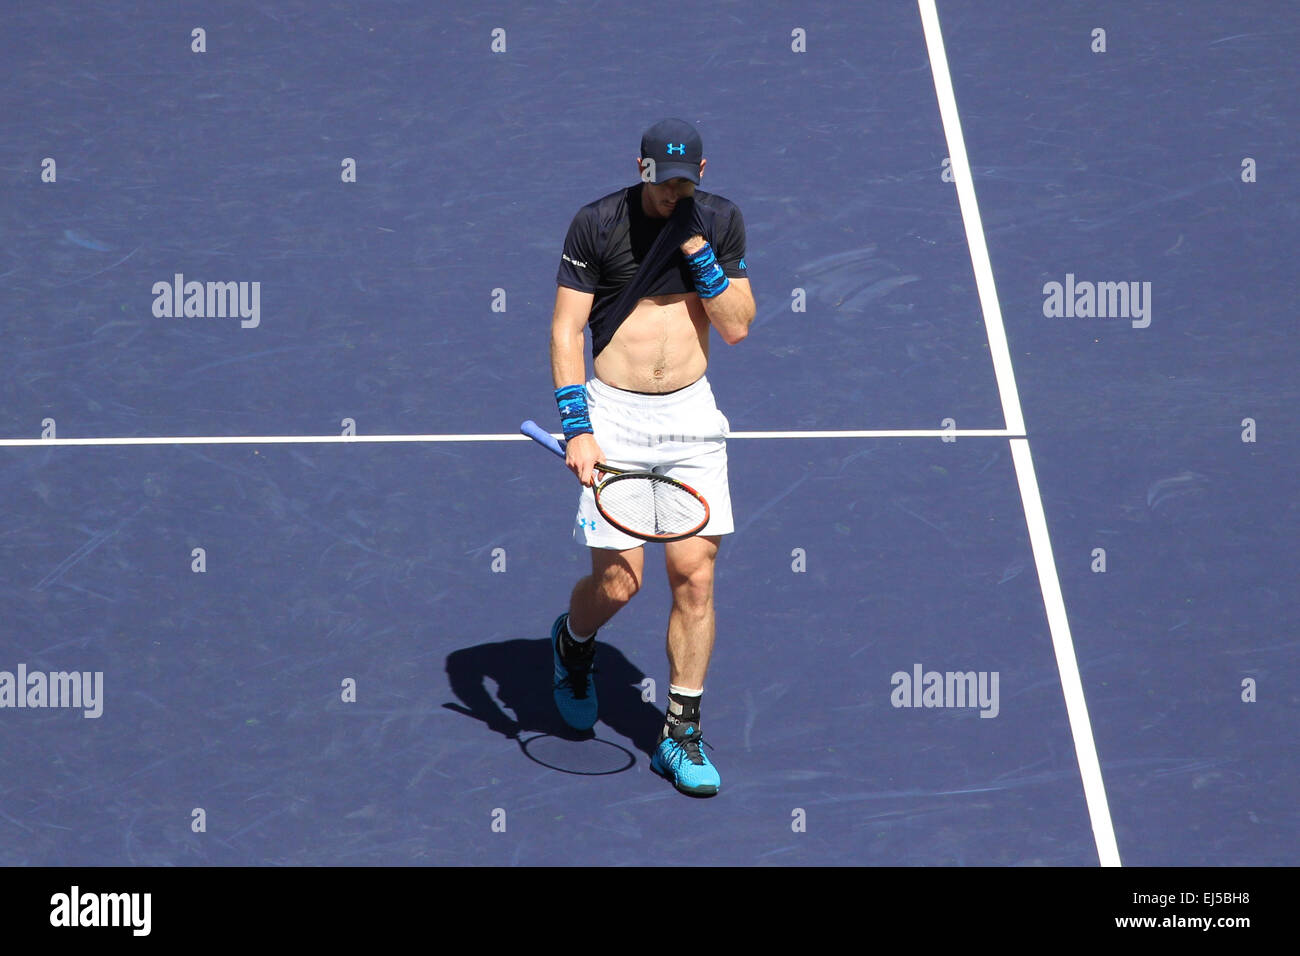 Indian Wells, en Californie, USA. 21 mars, 2015. Joueur de tennis Novak Djokovic (Serbie) bat joueur Britannique Andy Murray en demi-finale du simple messieurs au BNP Paribas Open (score 6-2 6-3). Credit : Lisa Werner/Alamy Live News Banque D'Images